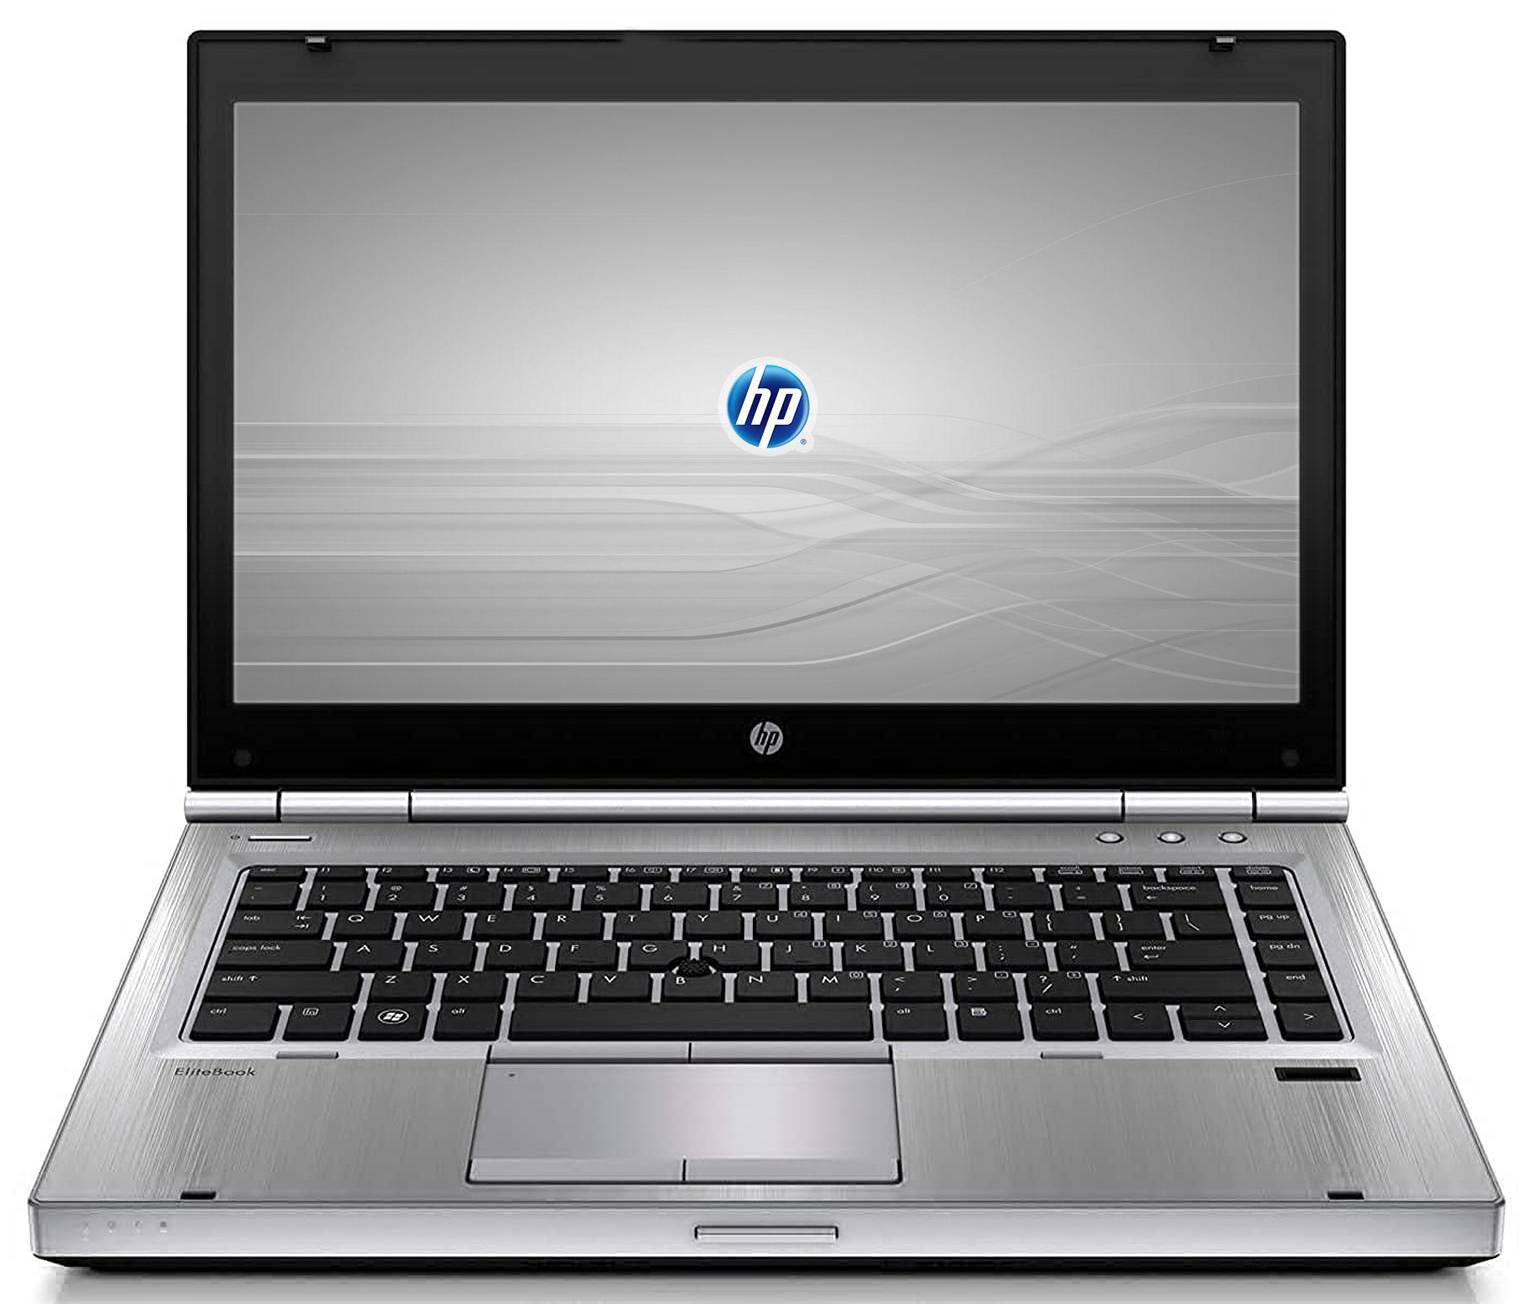 لپتاپ اچ پی استوک (HP) | EliteBook 8570p | avincomp.com